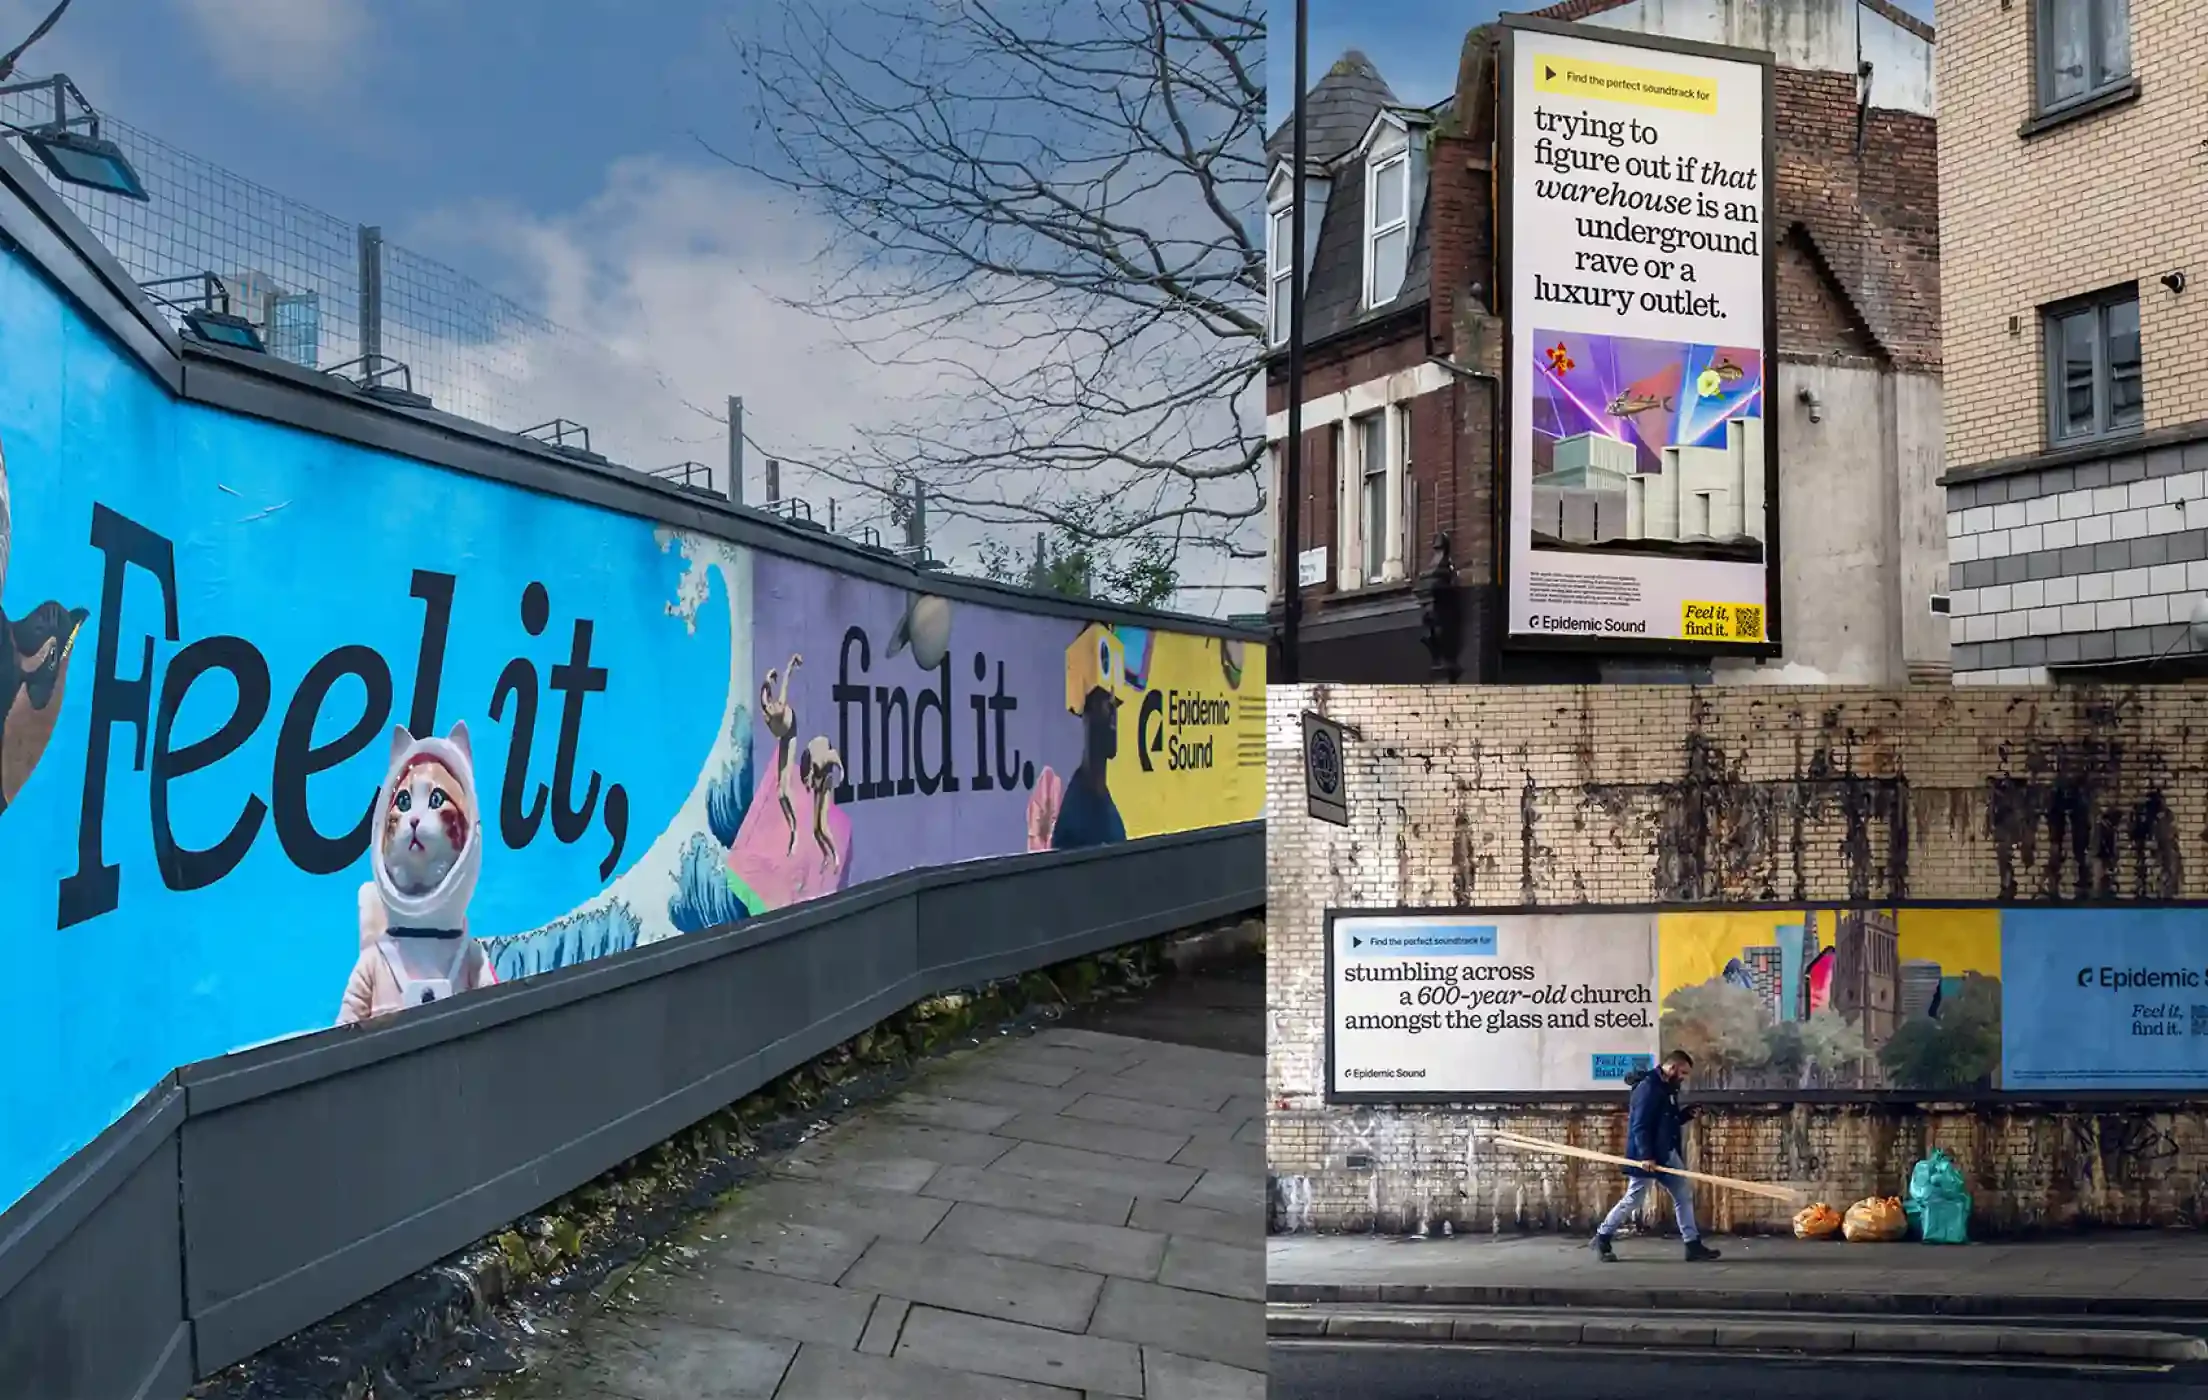 Kolase berbagai contoh kampanye merek di jalanan kota London